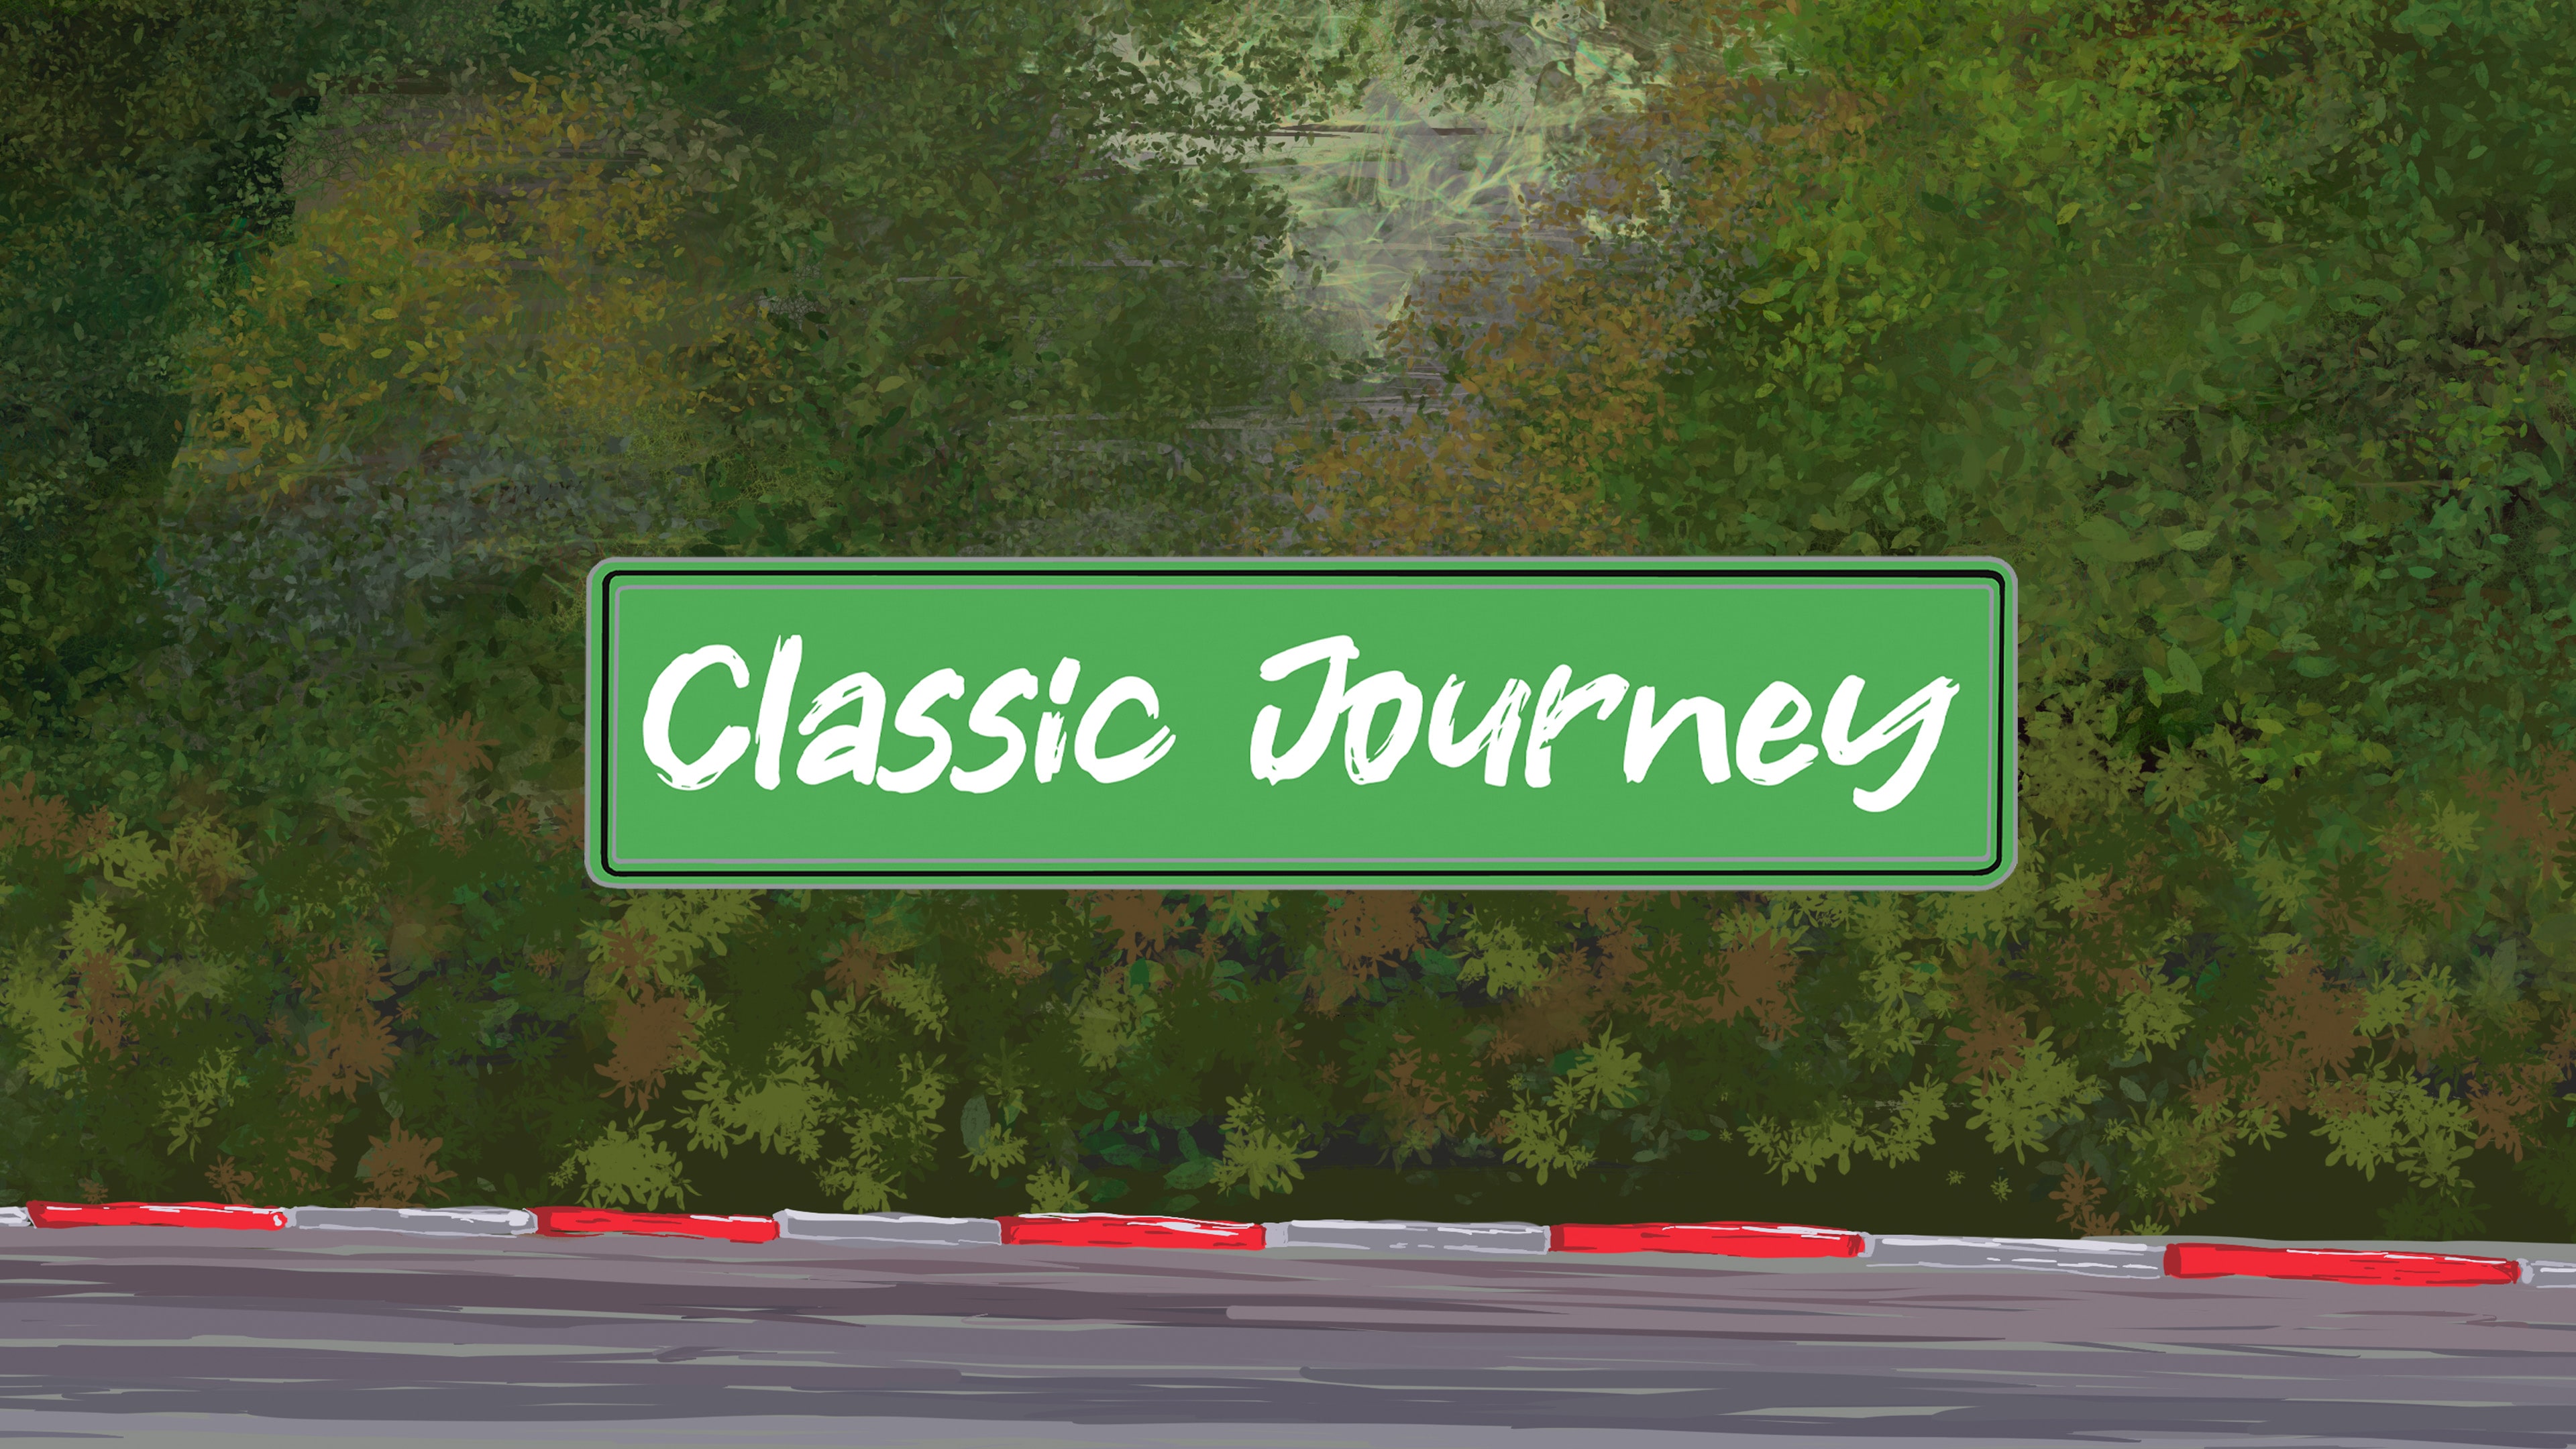 Classic Journey